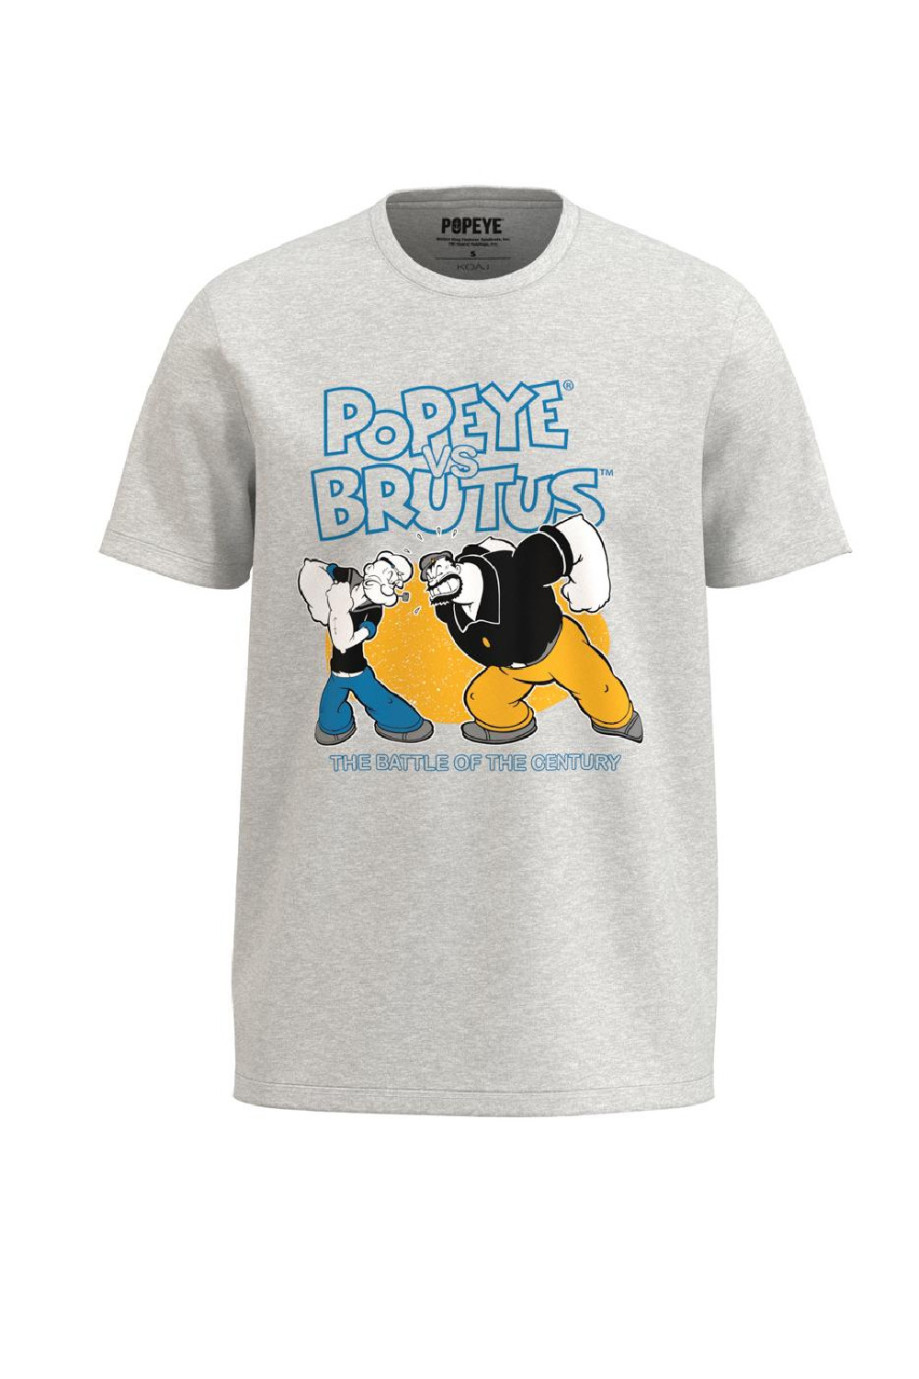 Camiseta unicolor cuello redondo con diseño de Popeye y Brutus